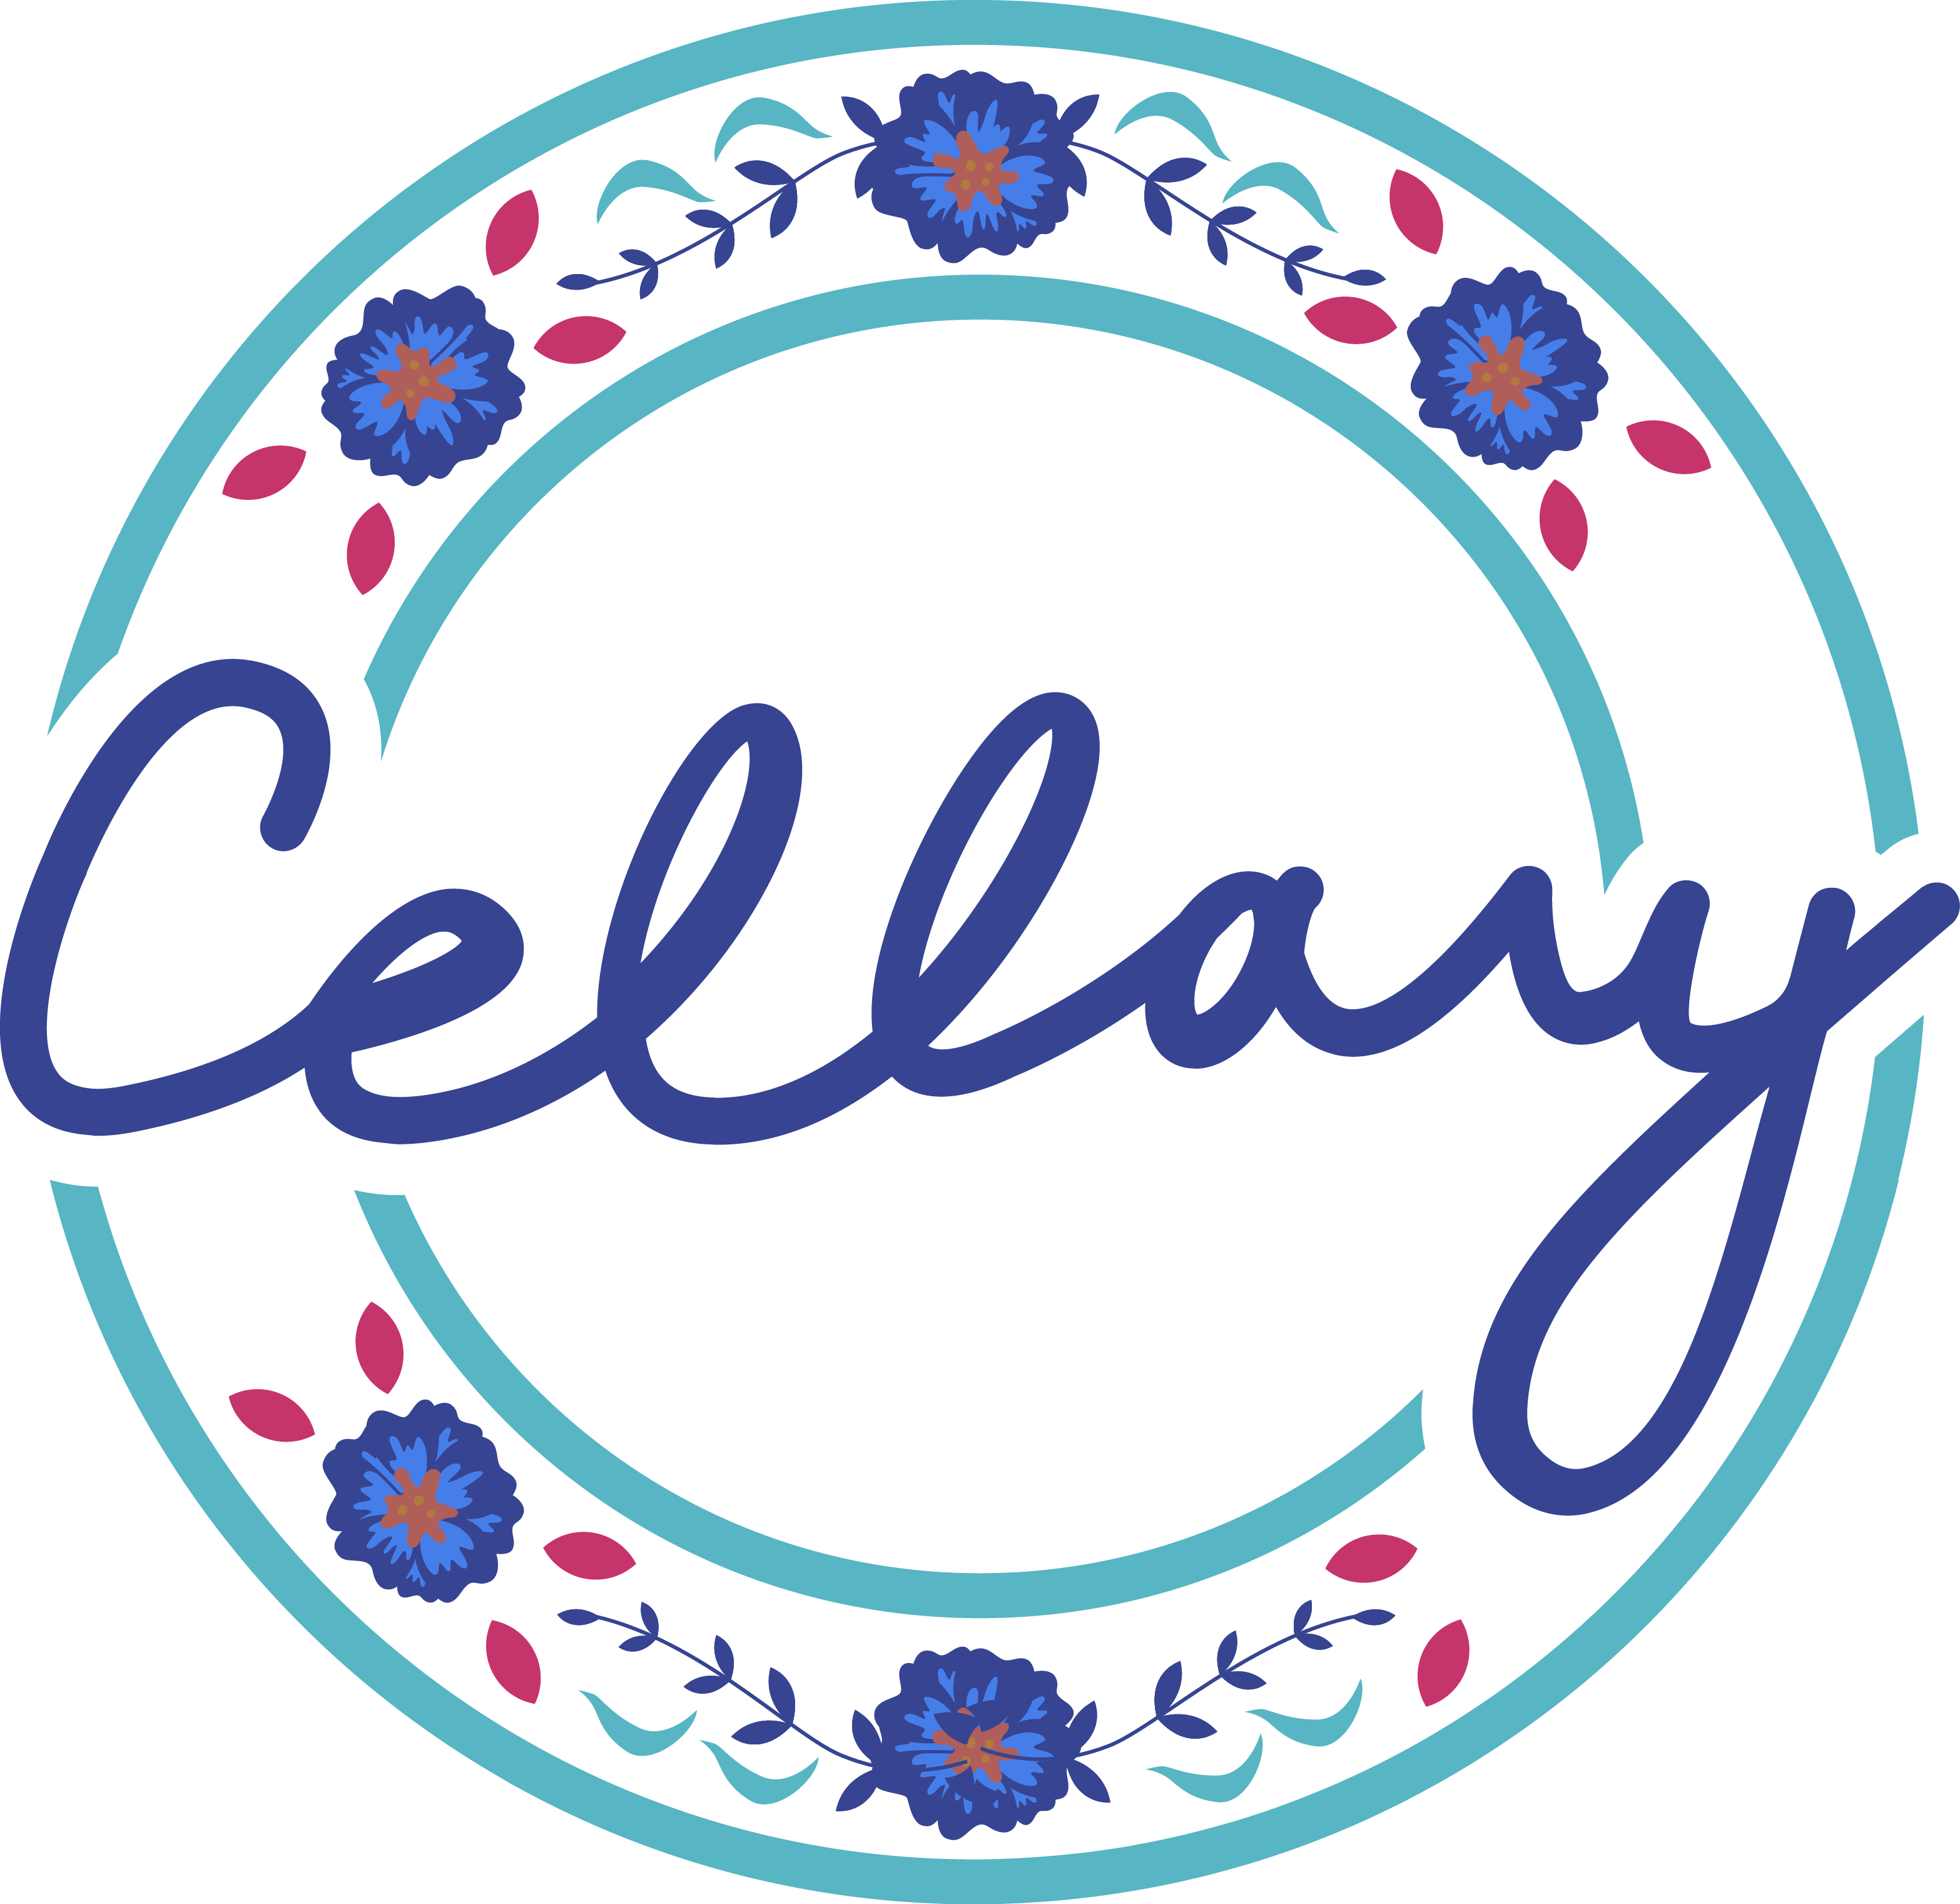 Cellary Inc